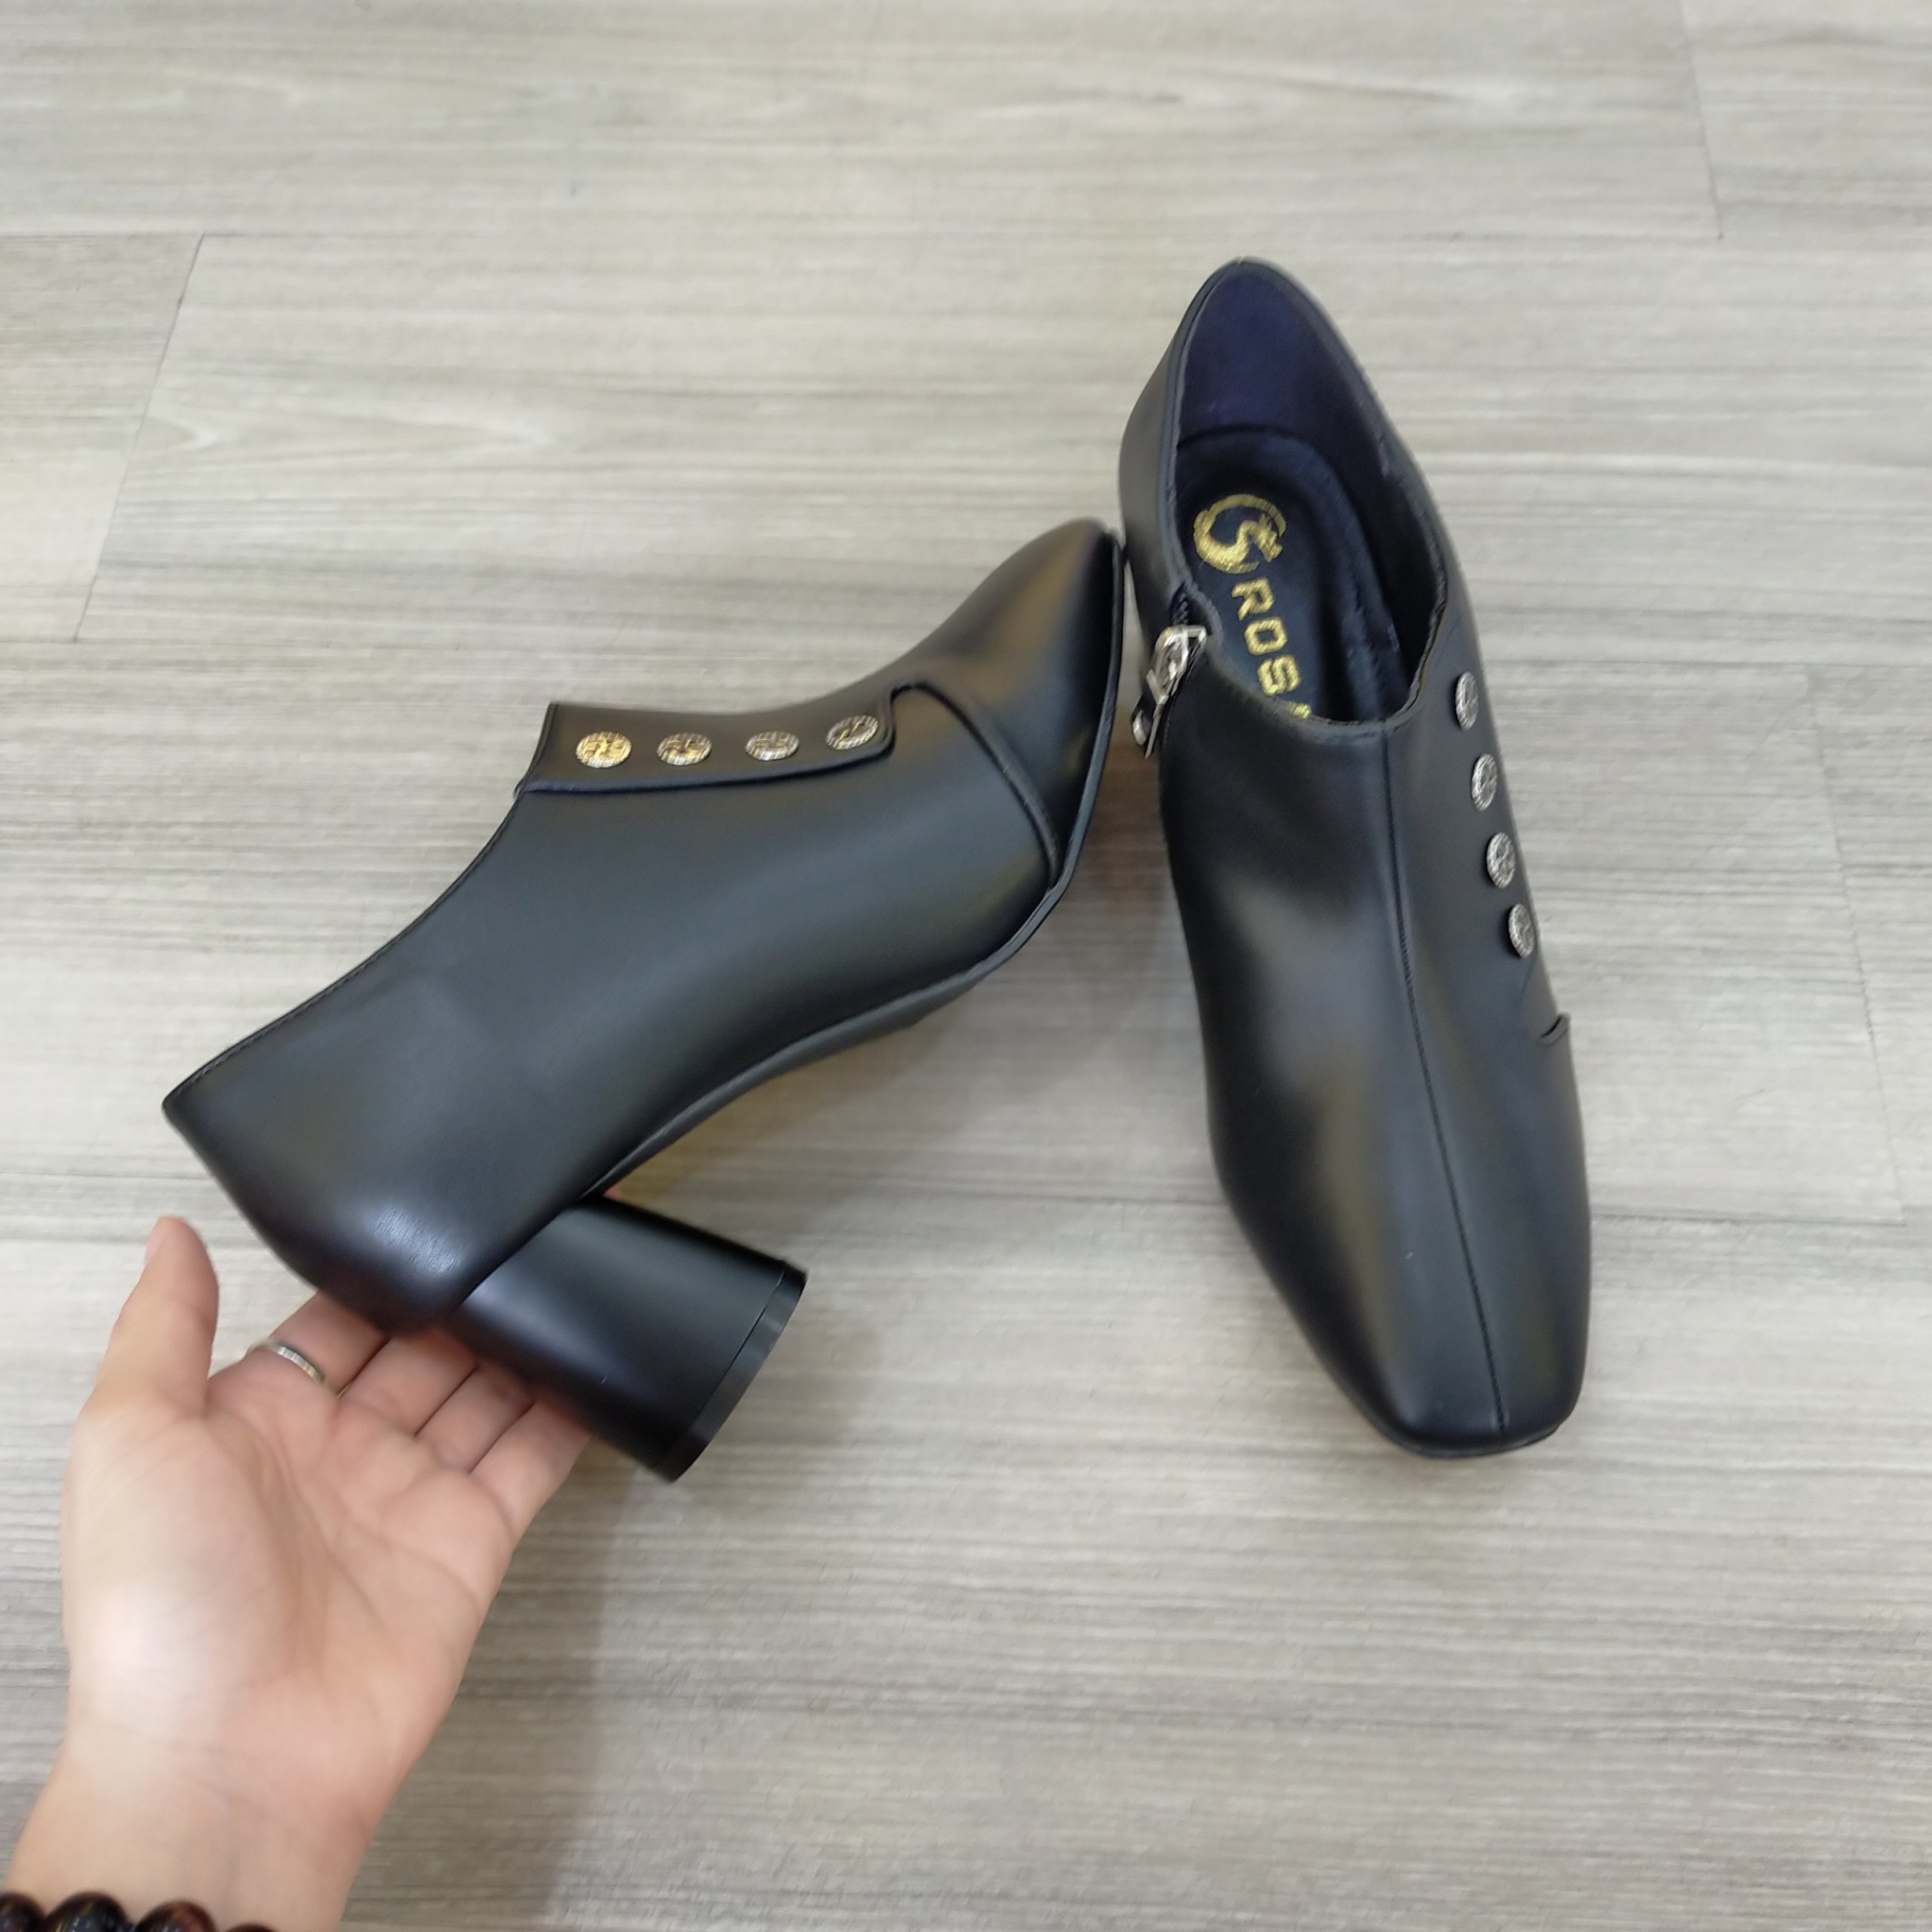 Boots thời trang nữ da lì cao cấp ROSATA RO289 5p gót trụ - đen, be - HÀNG VIỆT NAM - BKSTORE